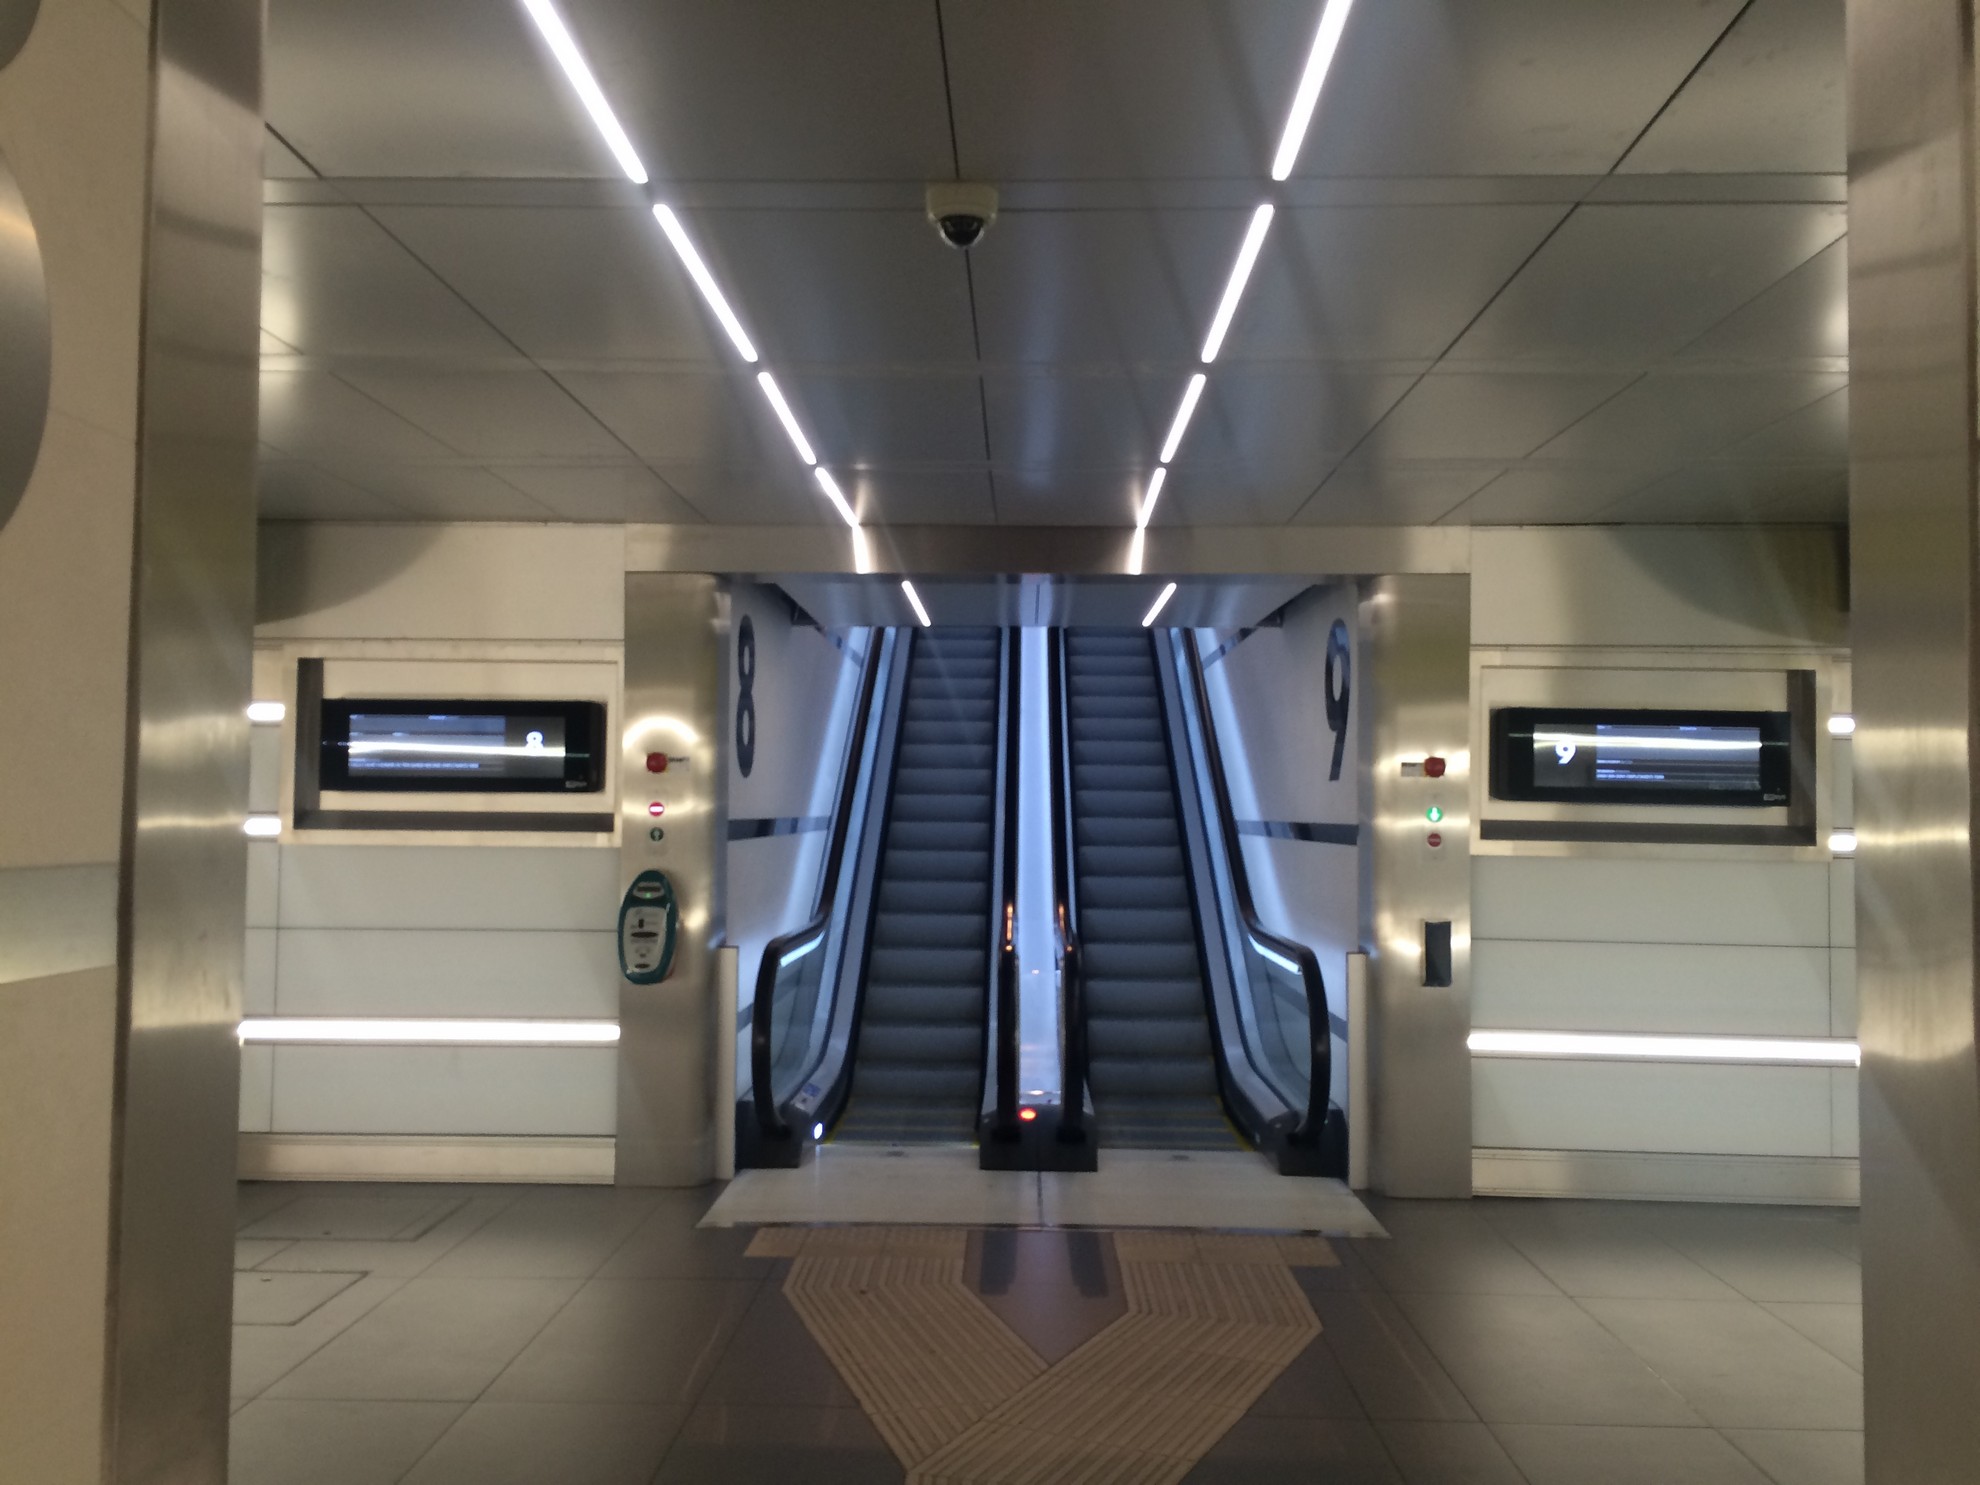 Riqualifica sottopassi e marciapiedi della Stazione di Bologna